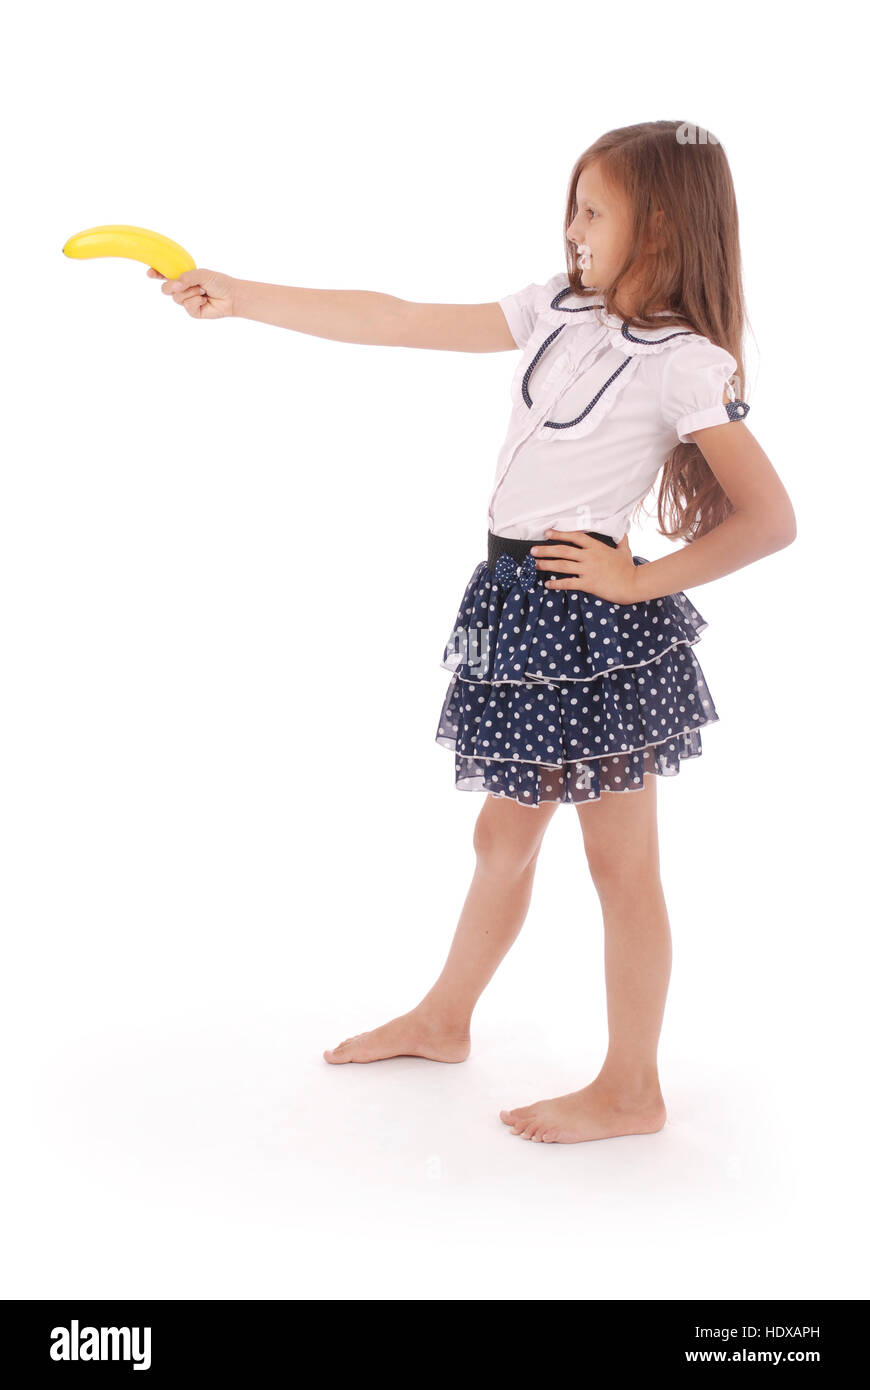 Una giovane ragazza detiene banana isolato su sfondo bianco Foto Stock